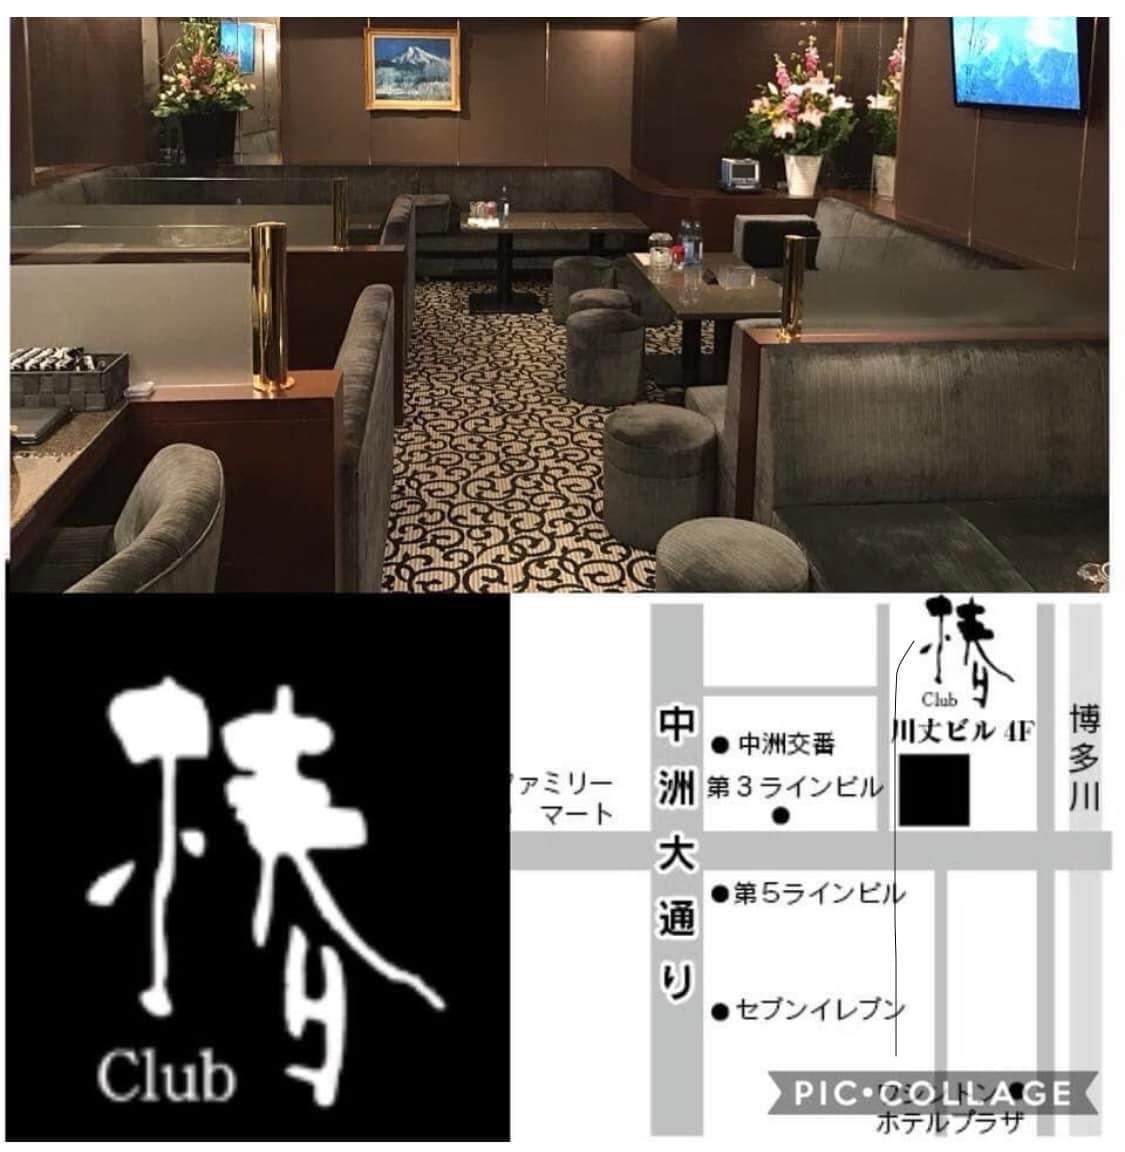 Images club 椿